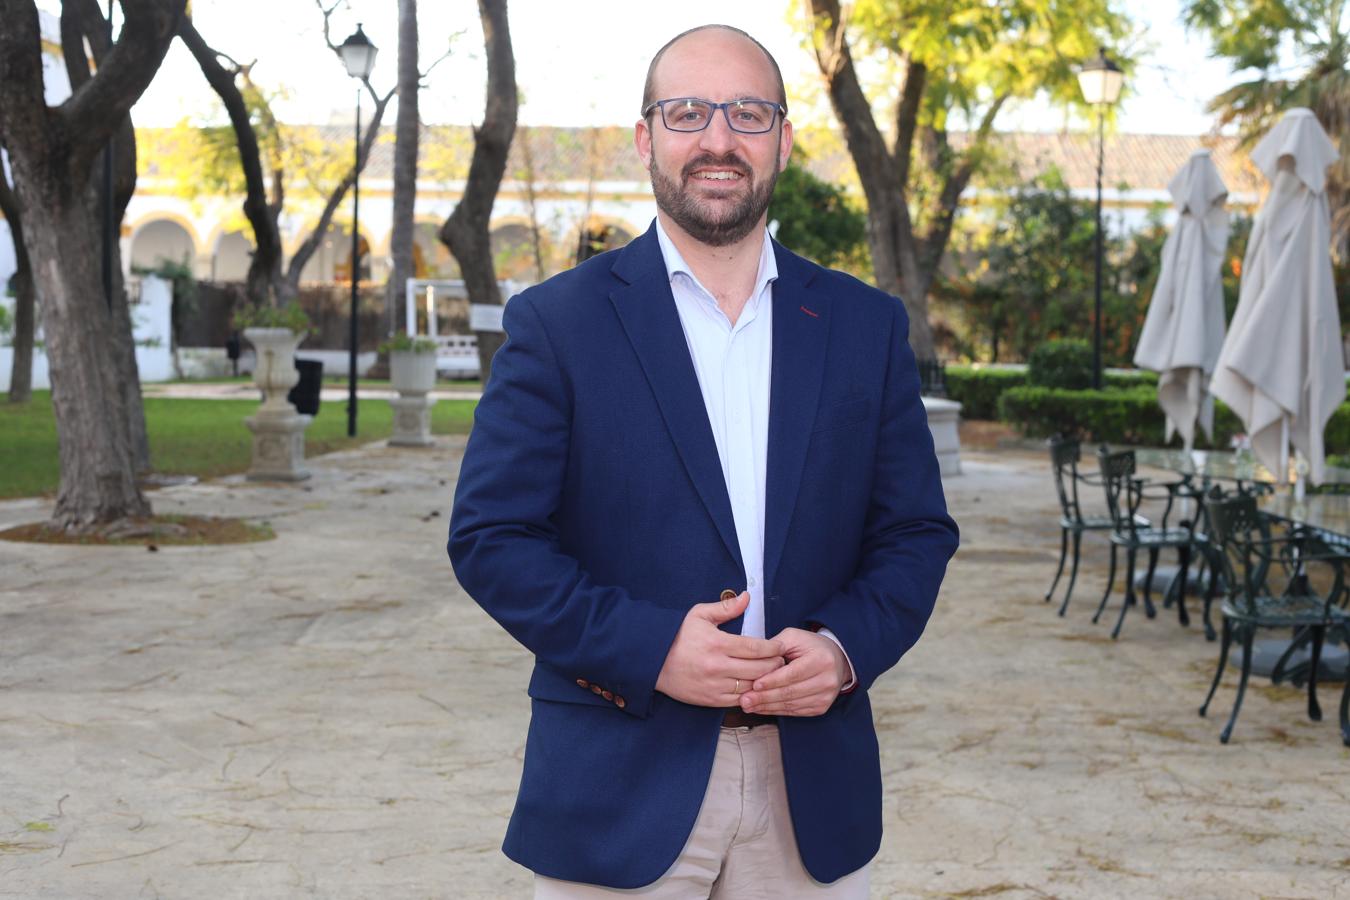 Germán Beardo es el nuevo alcalde de El Puerto tras la abstención de Vox